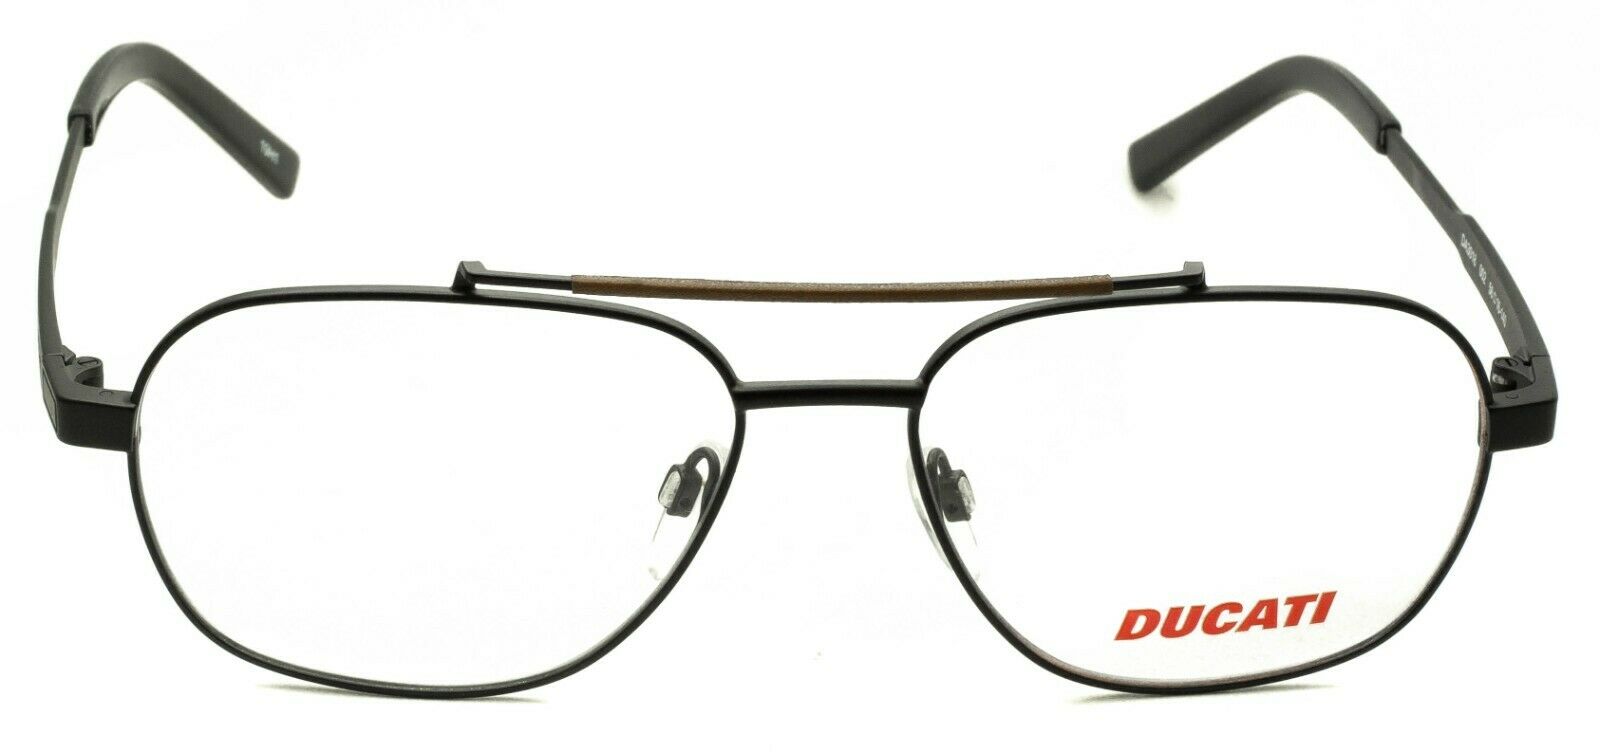 DUCATI DA3018 002 56mm FRAMES Glasses RX Optical Eyewear Eyeglasses BNIB - New